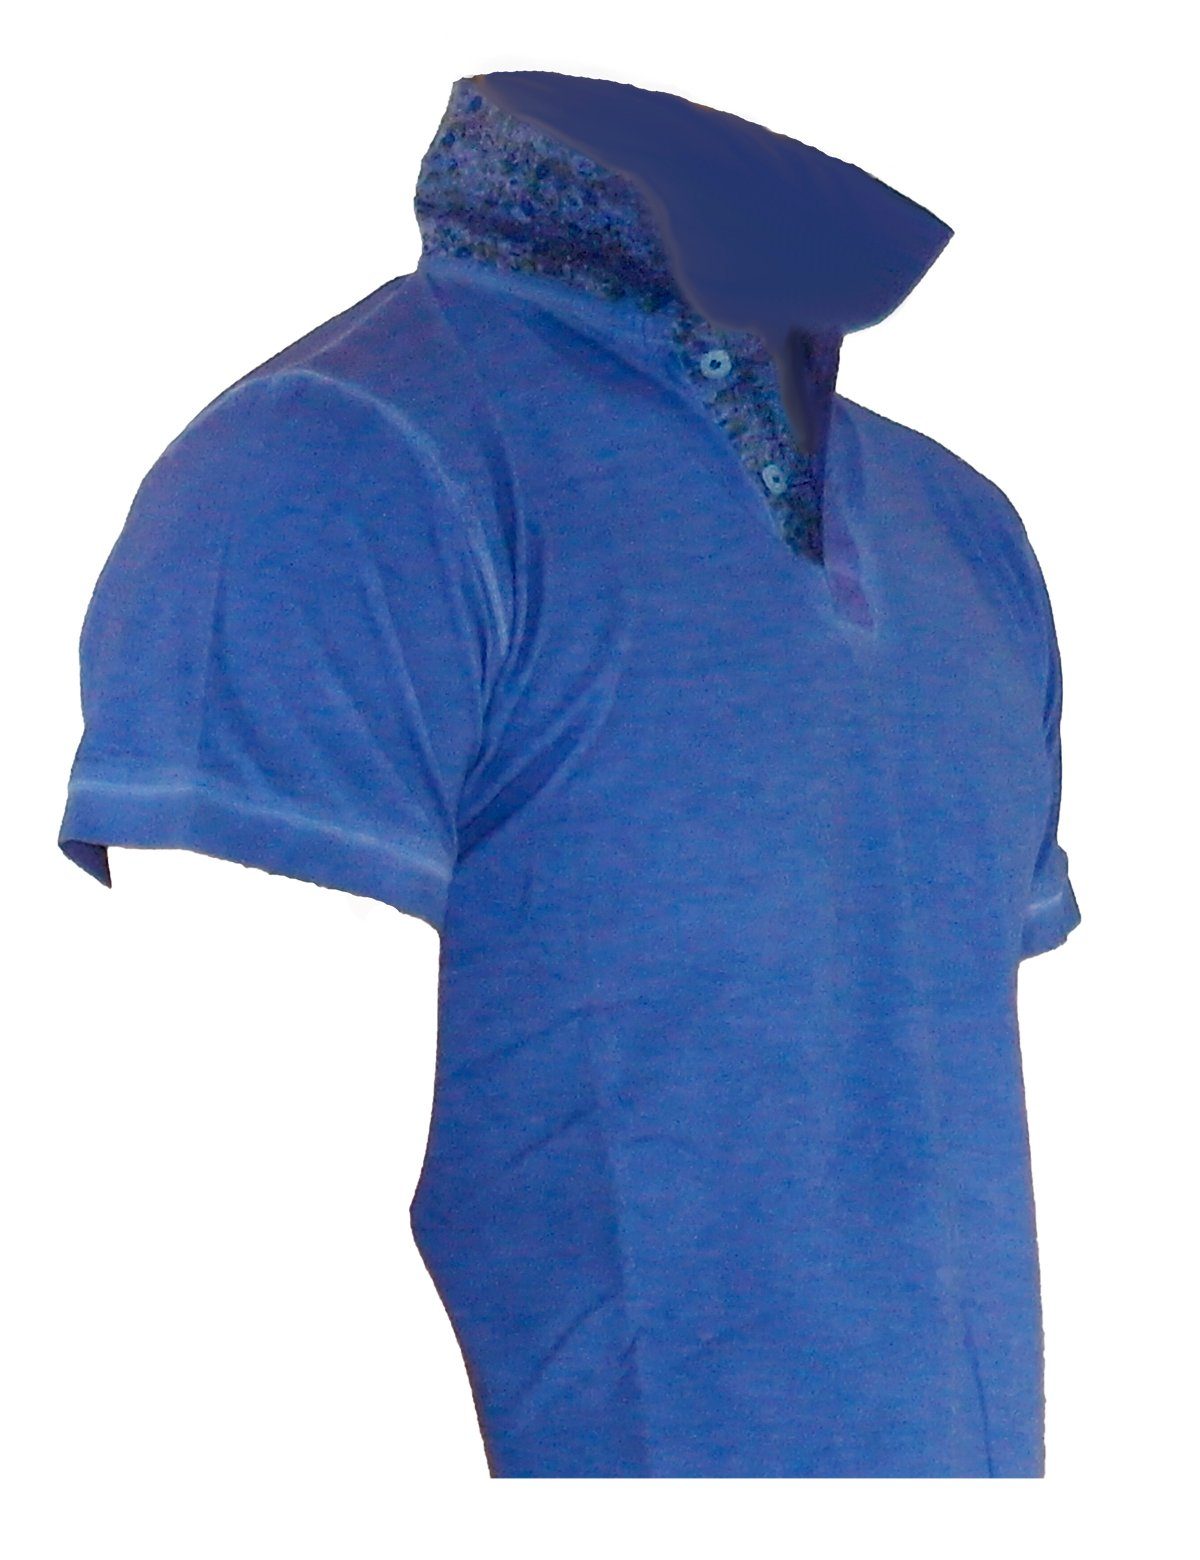 Herren T-Shirt Tank Shirt YESET Figurbetont Hemd Poloshirt Top A810 Poloshirt Blau Kurzarm